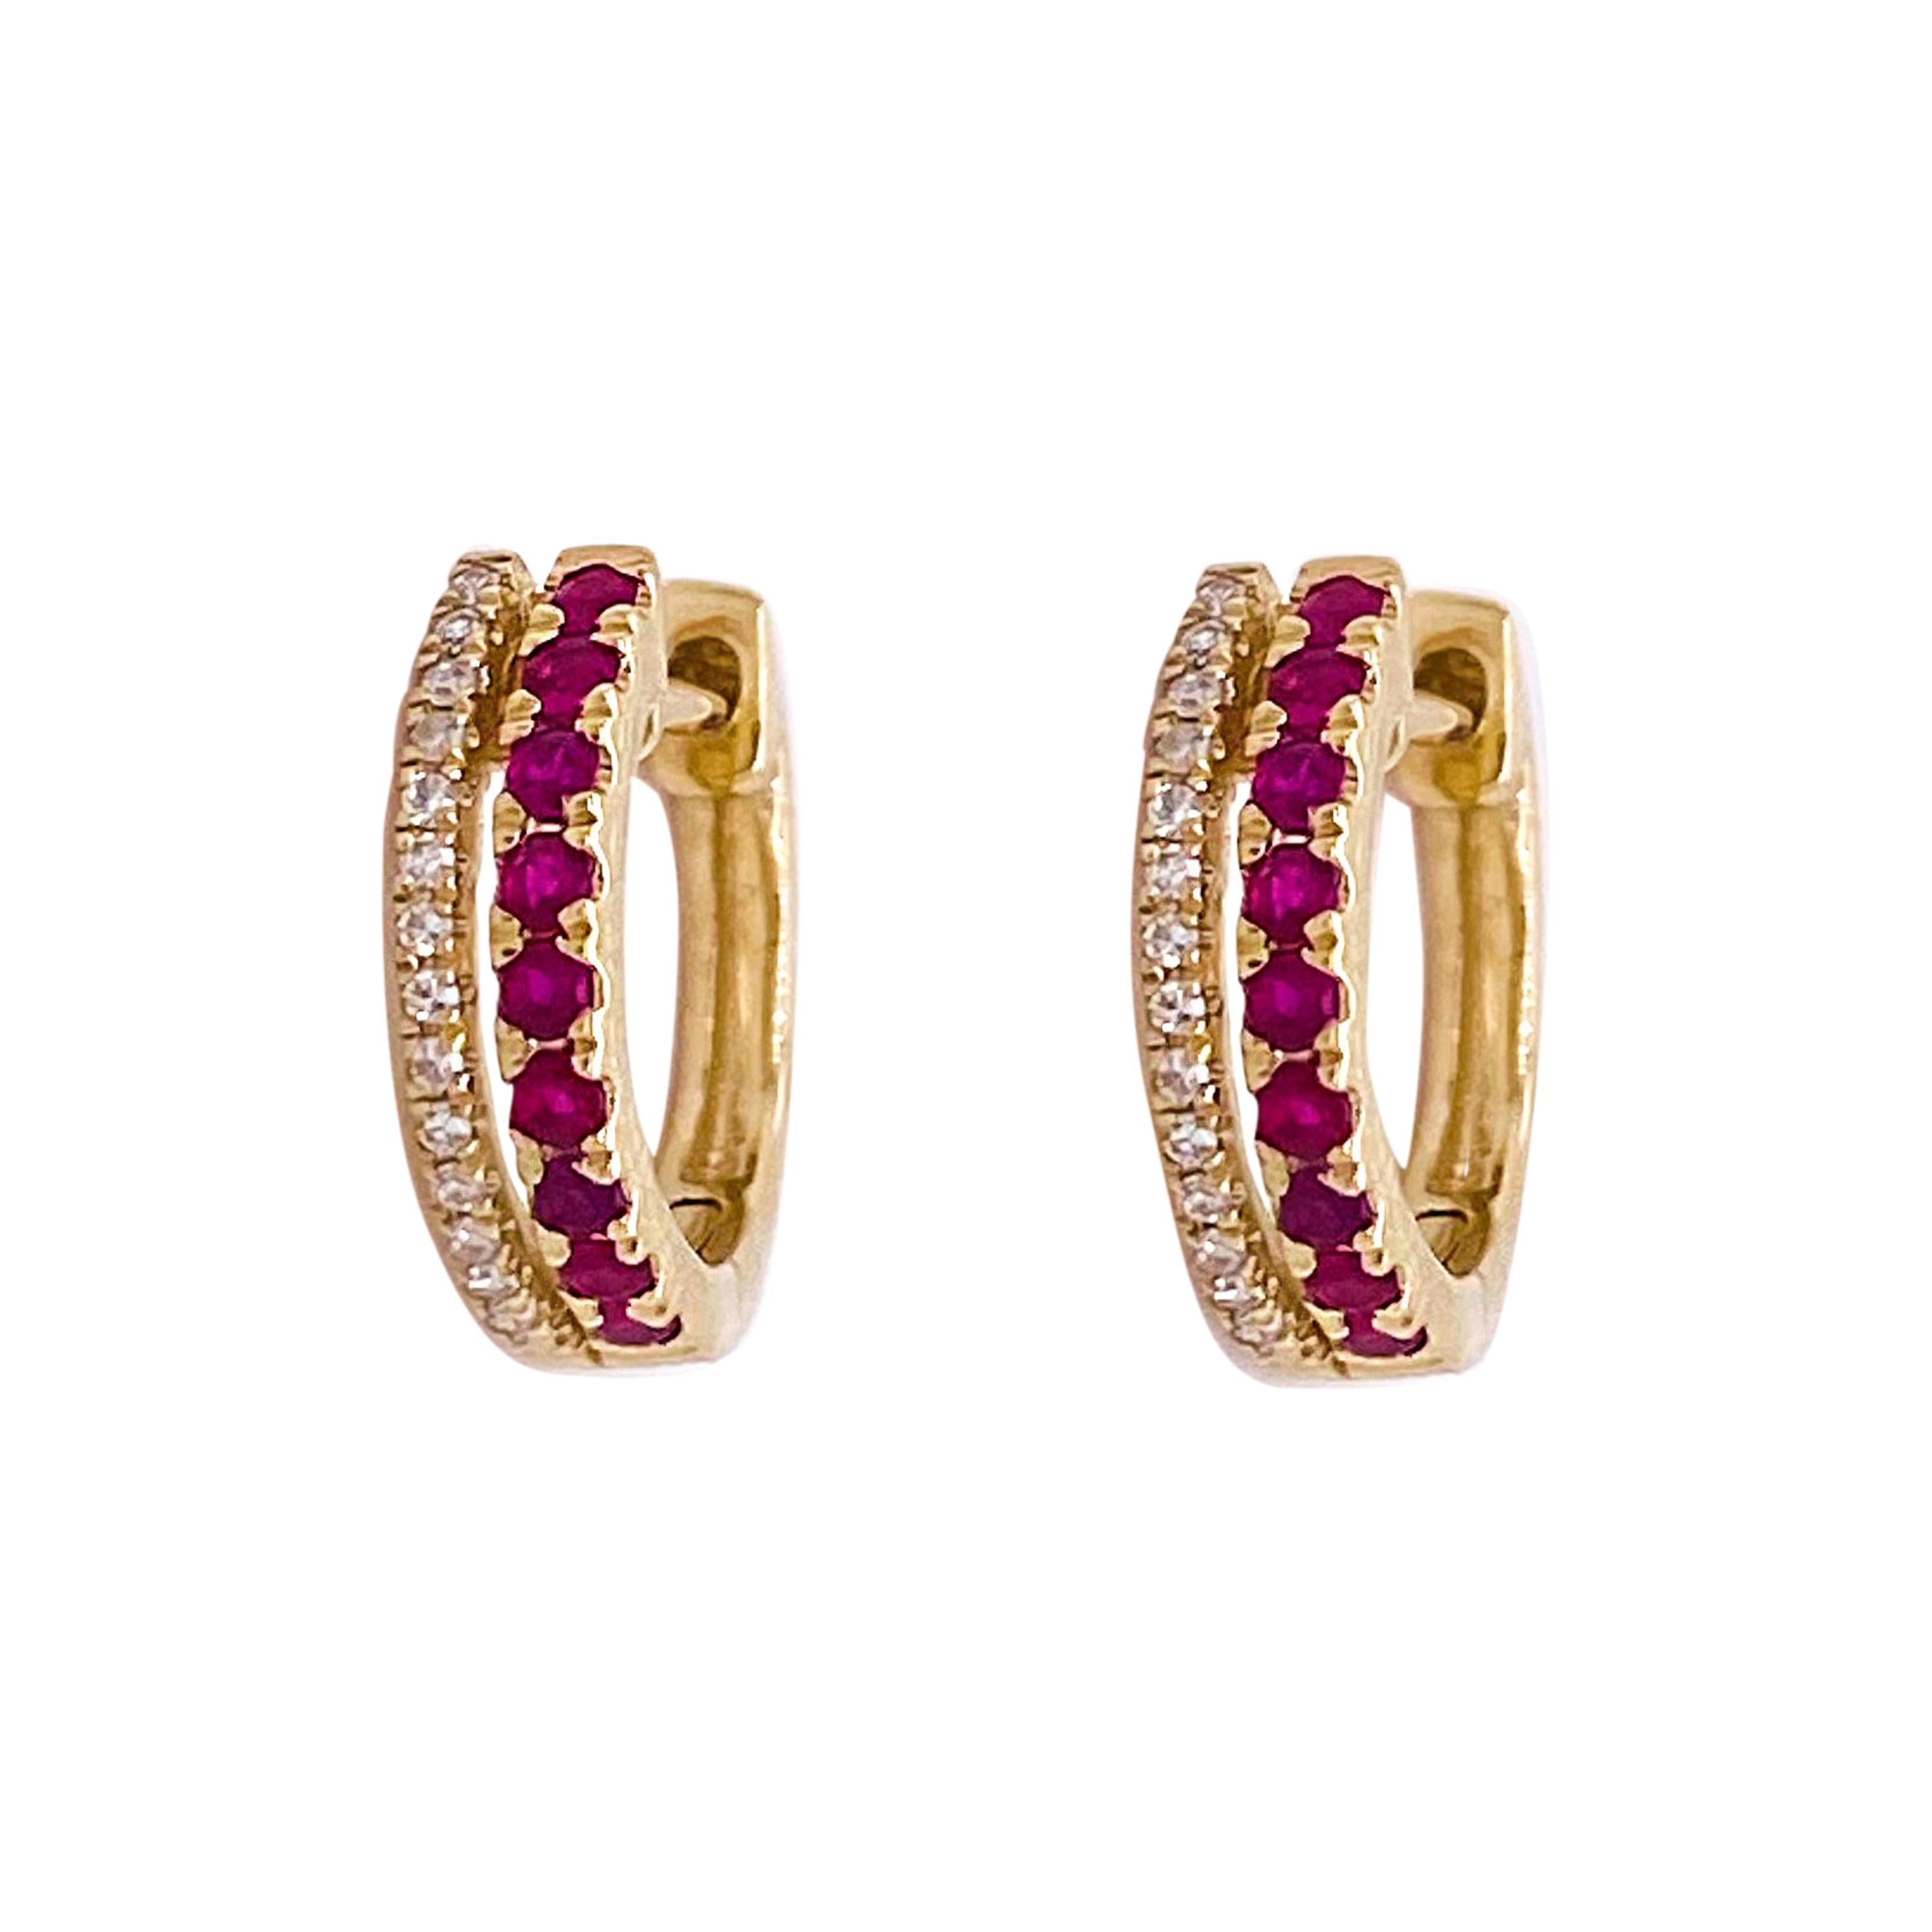 Diamond Ruby Earrings Hoops, 14 Karat Gold Huggies w Rubies and Diamonds Hinge For Sale